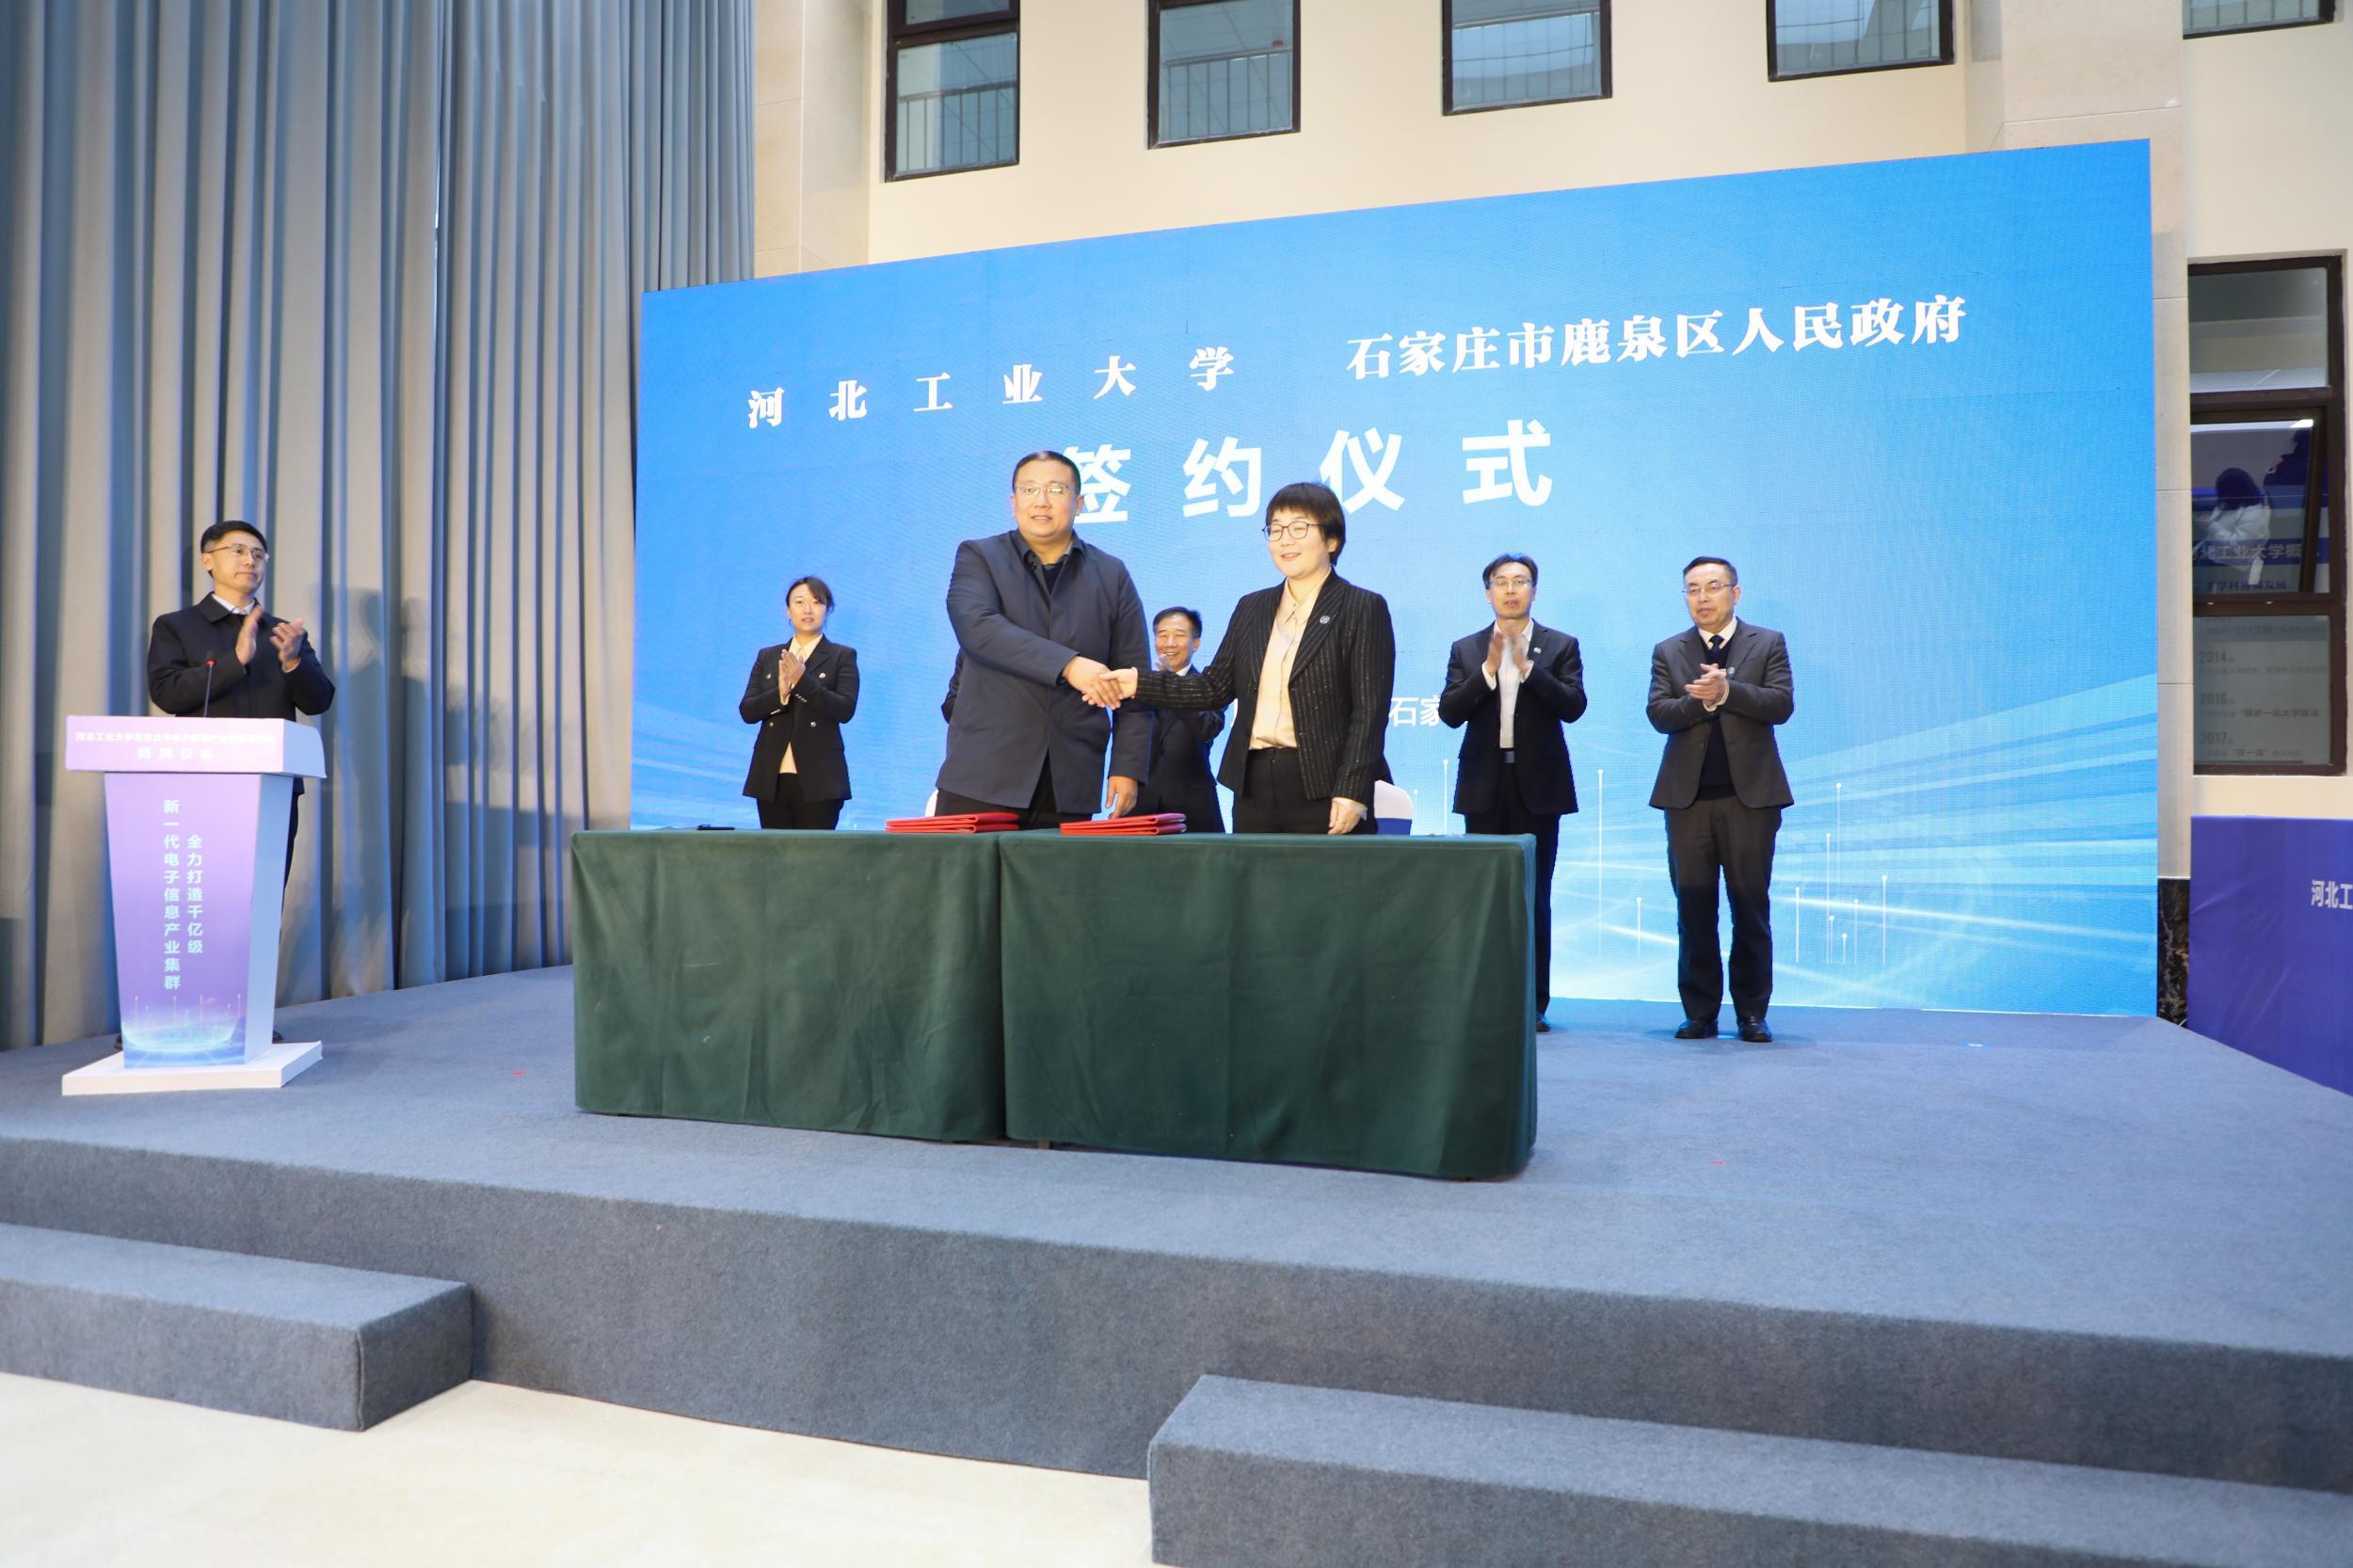 河北工业大学石家庄市电子信息产业创新研究院正式揭牌成立